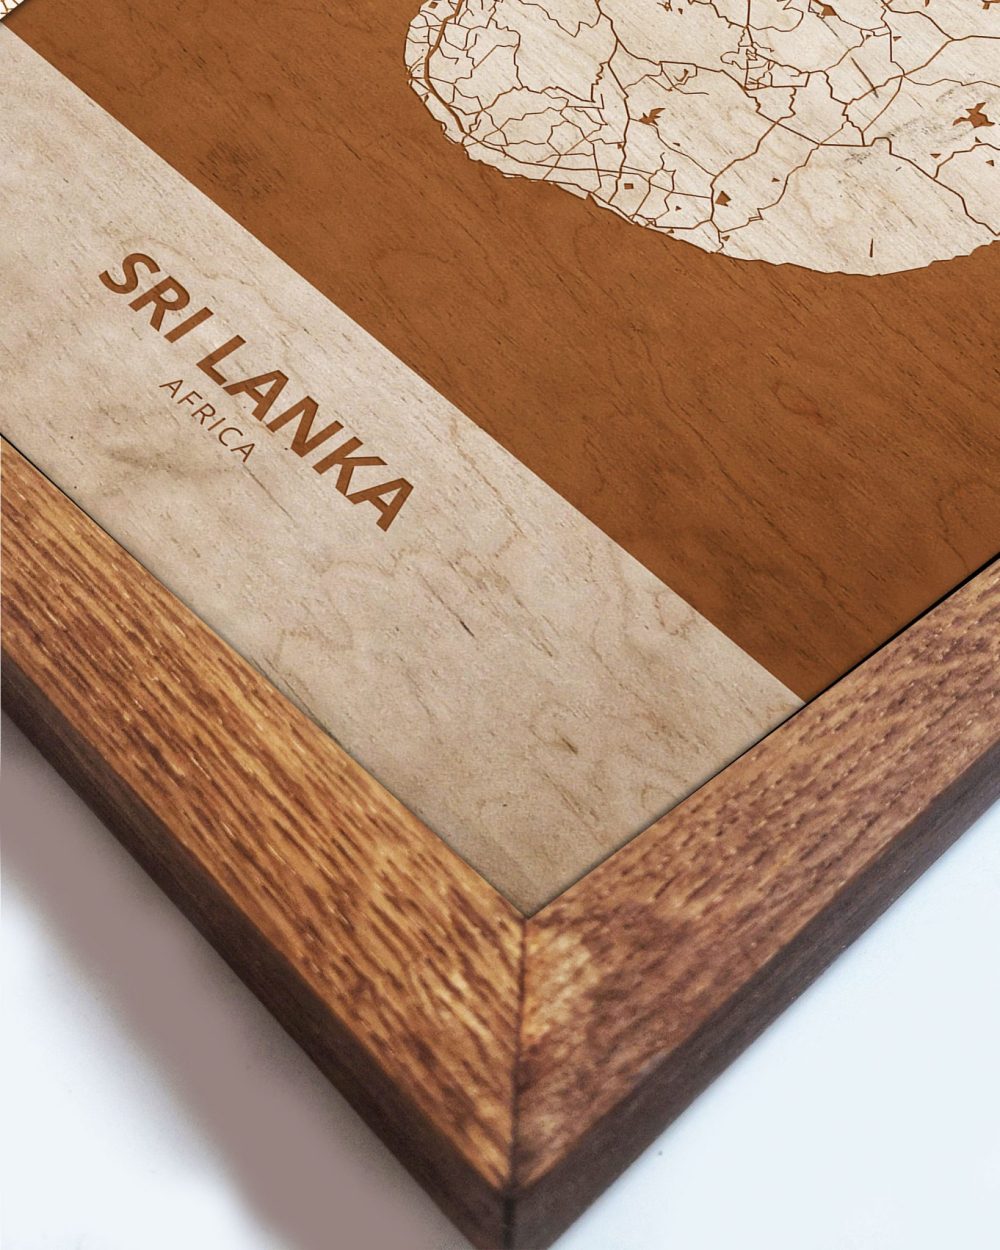 Drewniany obraz państwa- Sri Lanka w dębowej ramie